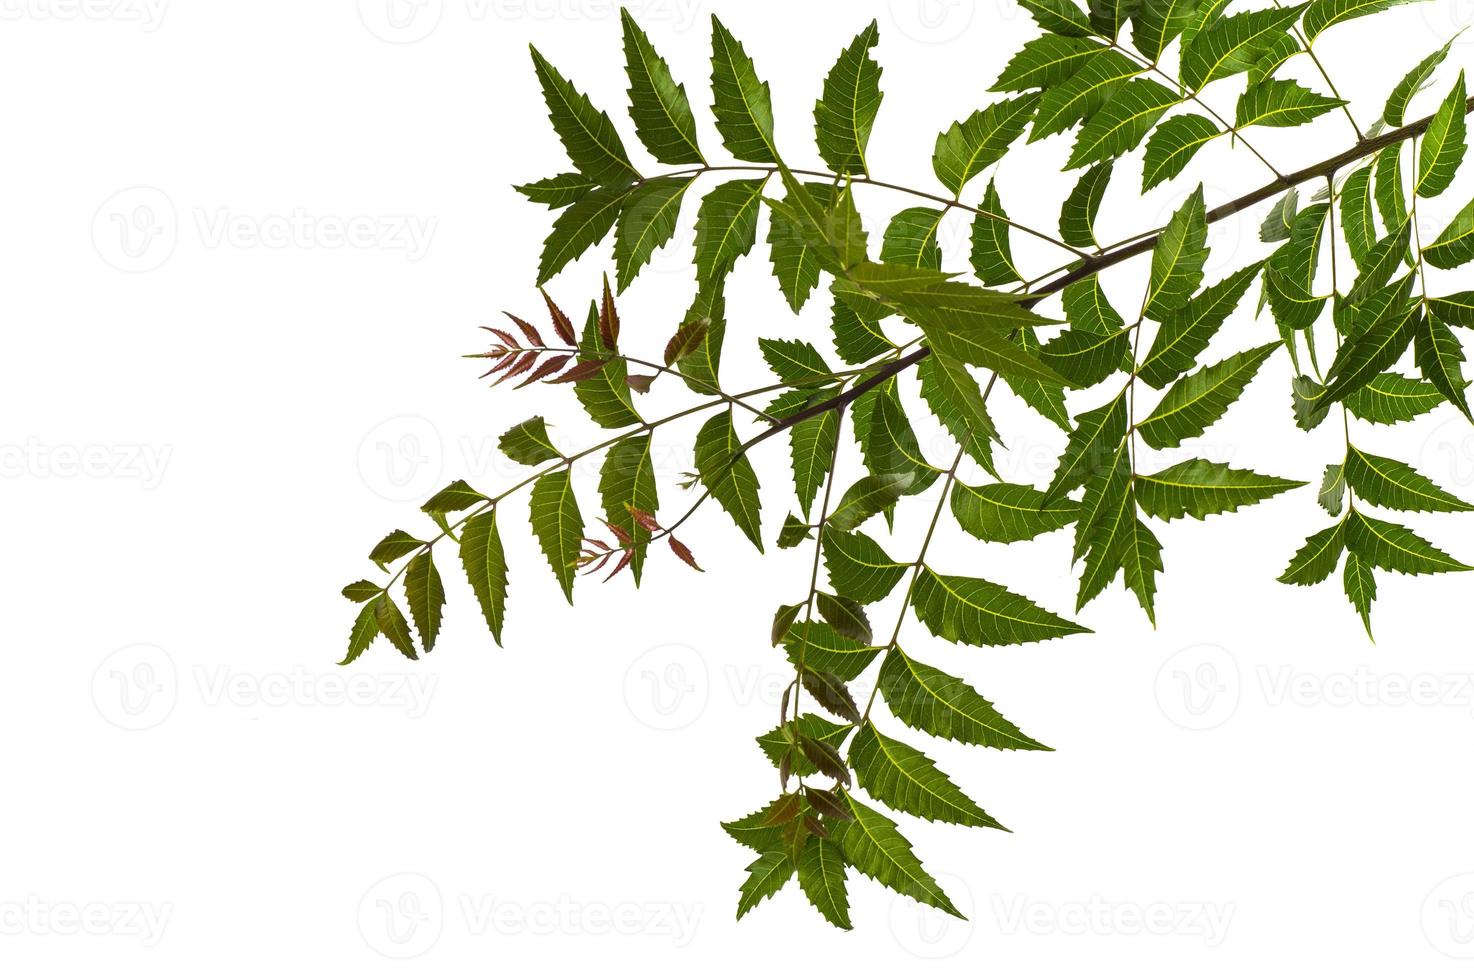 medicinskt neemblad på vit bakgrund. azadirachta indica. foto